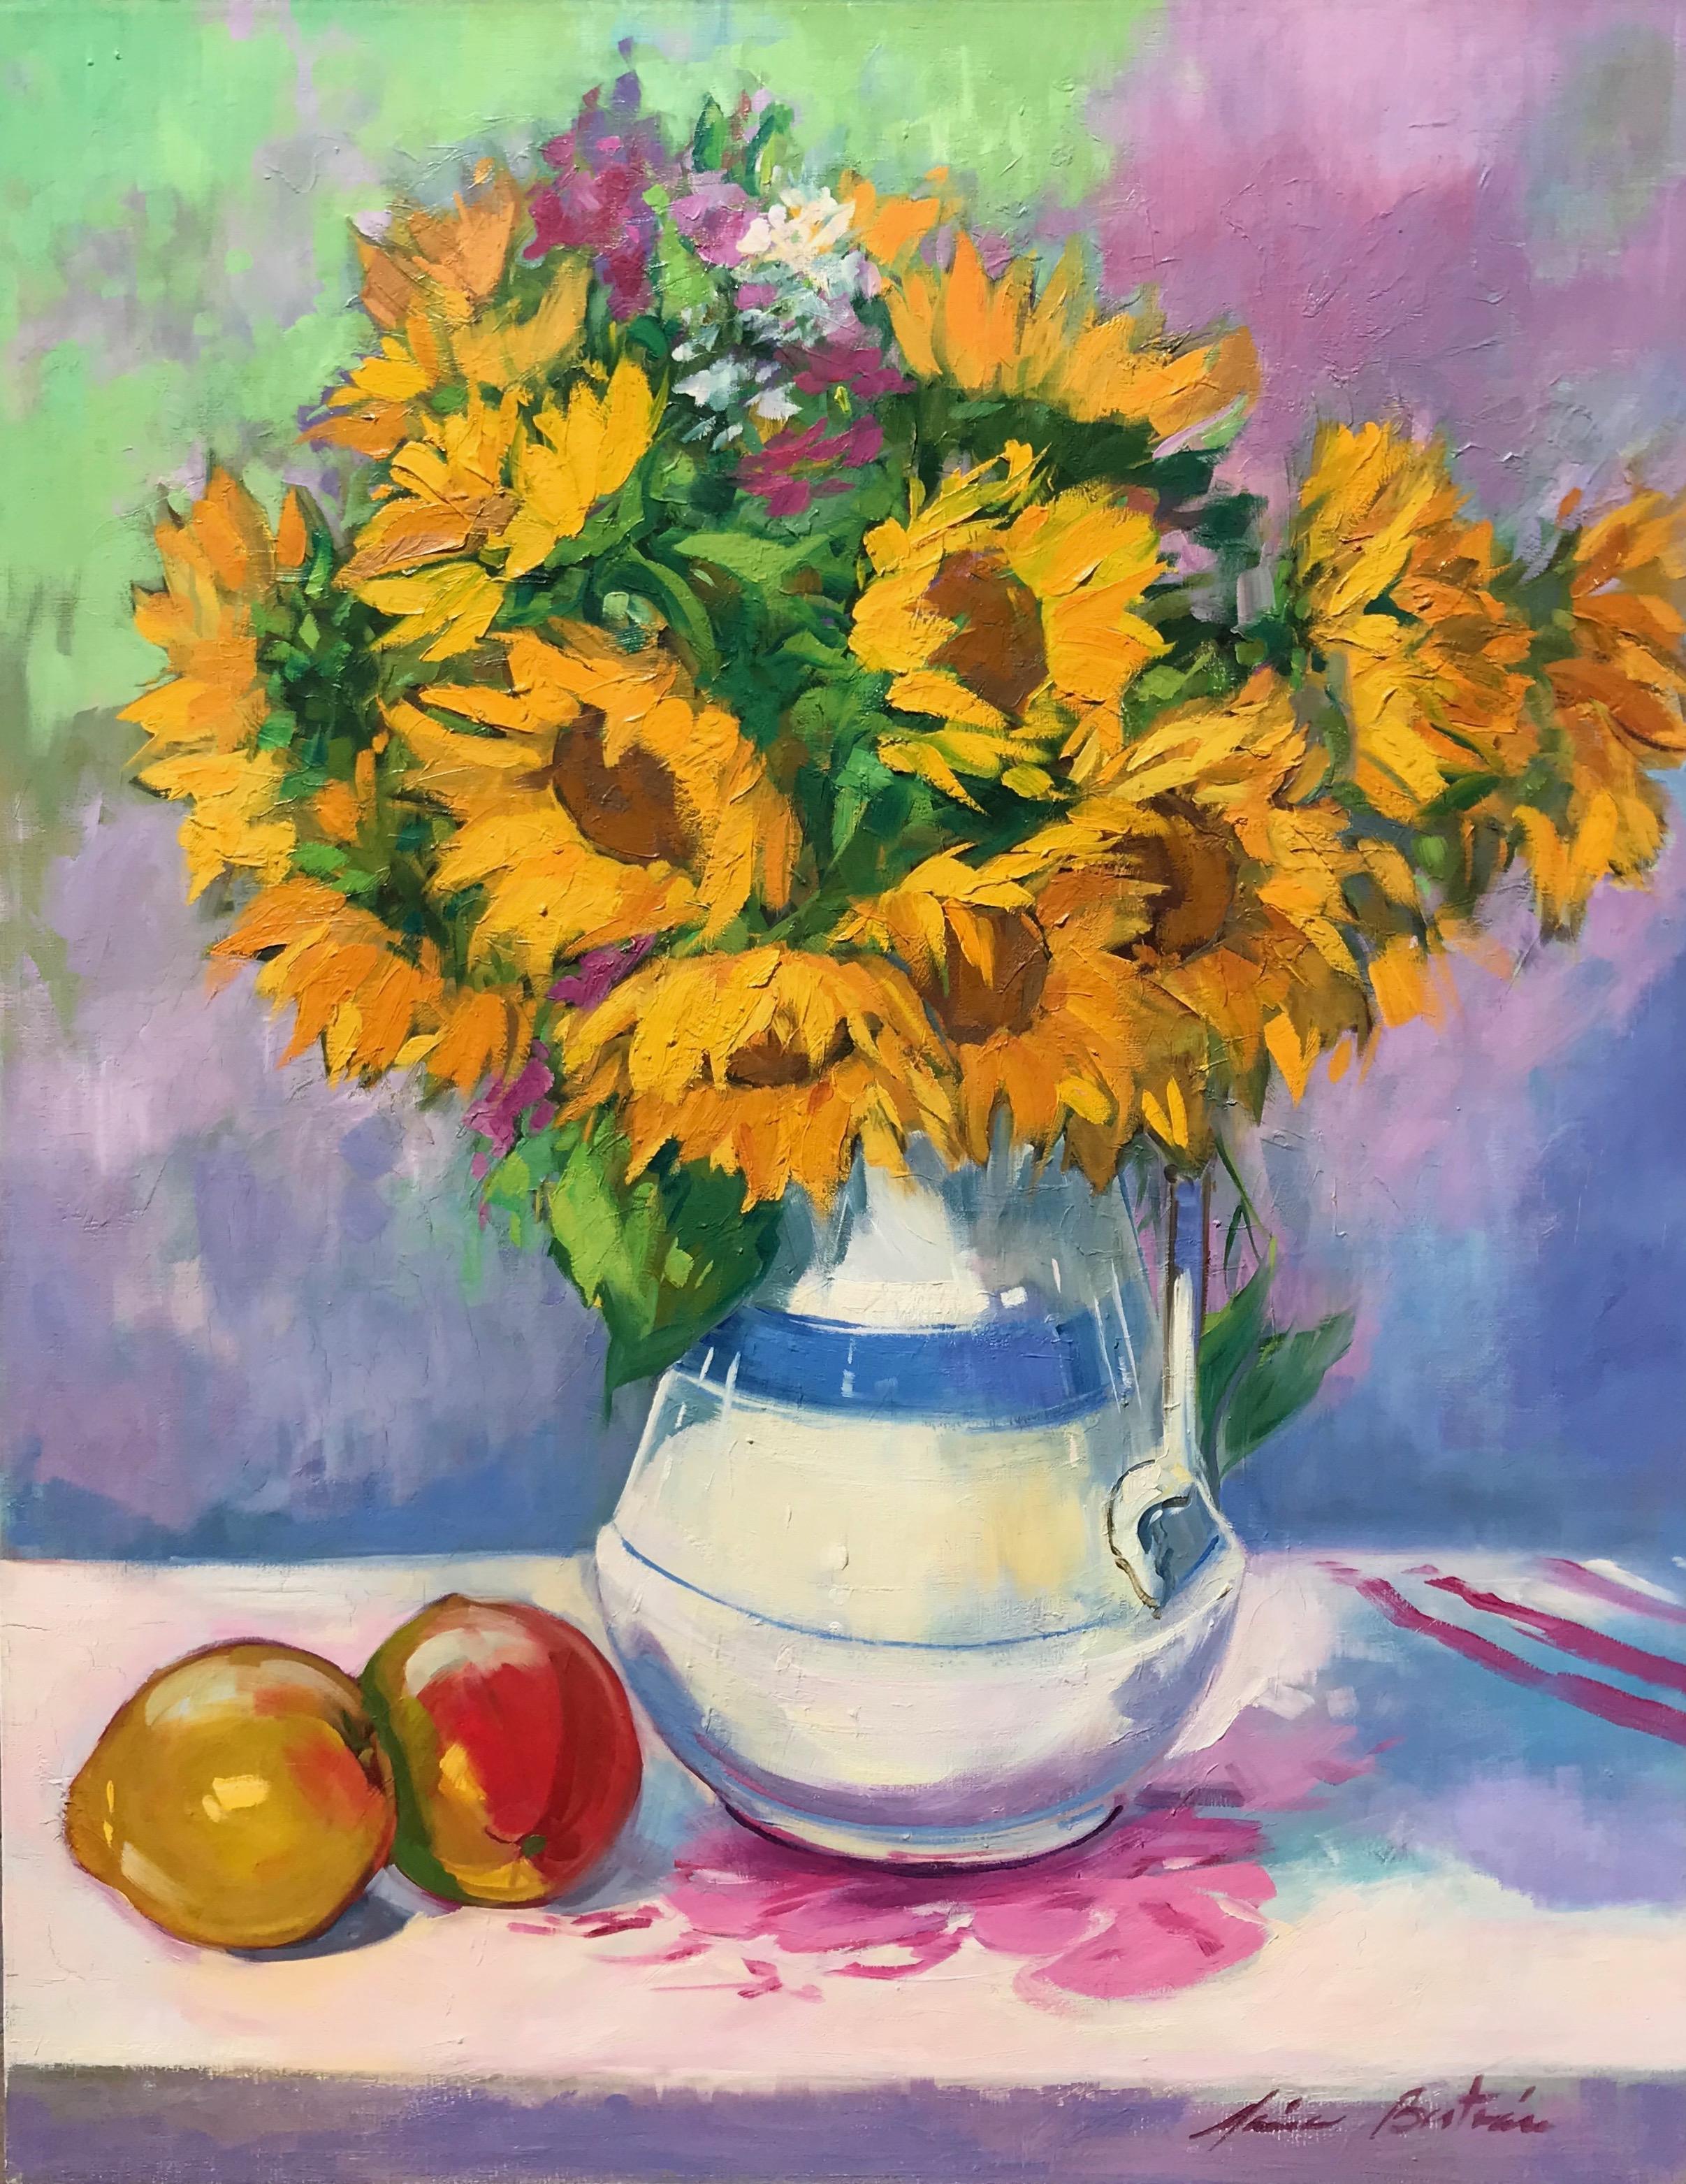 Maria Bertrán Still-Life Painting – "Sonnenblumen in weißer Vase" Zeitgenössisches impressionistisches Stillleben Öl